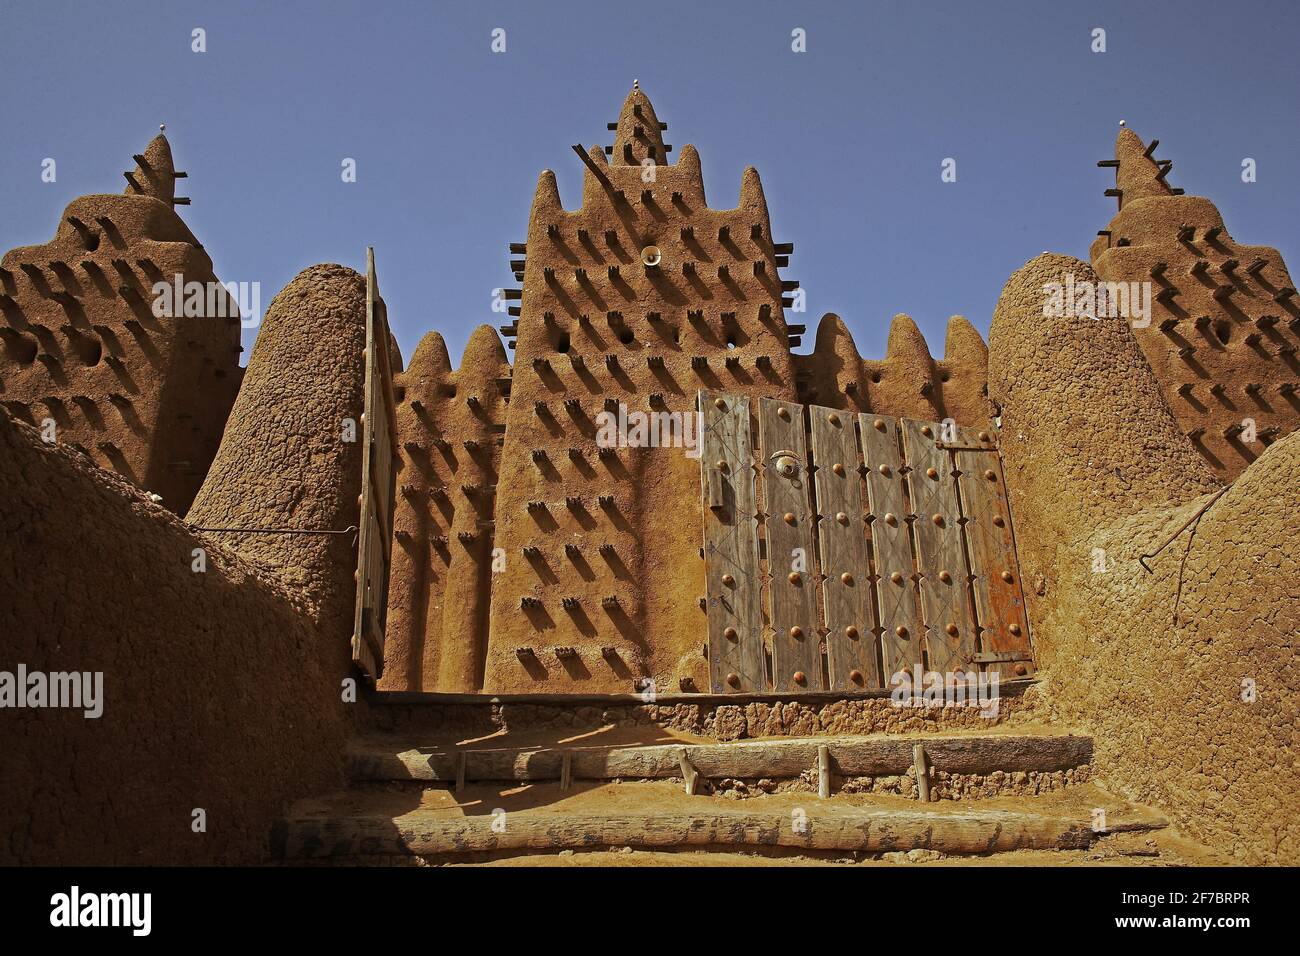 MALI / Djenne / la Grande Moschea costruita nel 1906 è un eccellente esempio di architettura di fango sudanese. Foto Stock